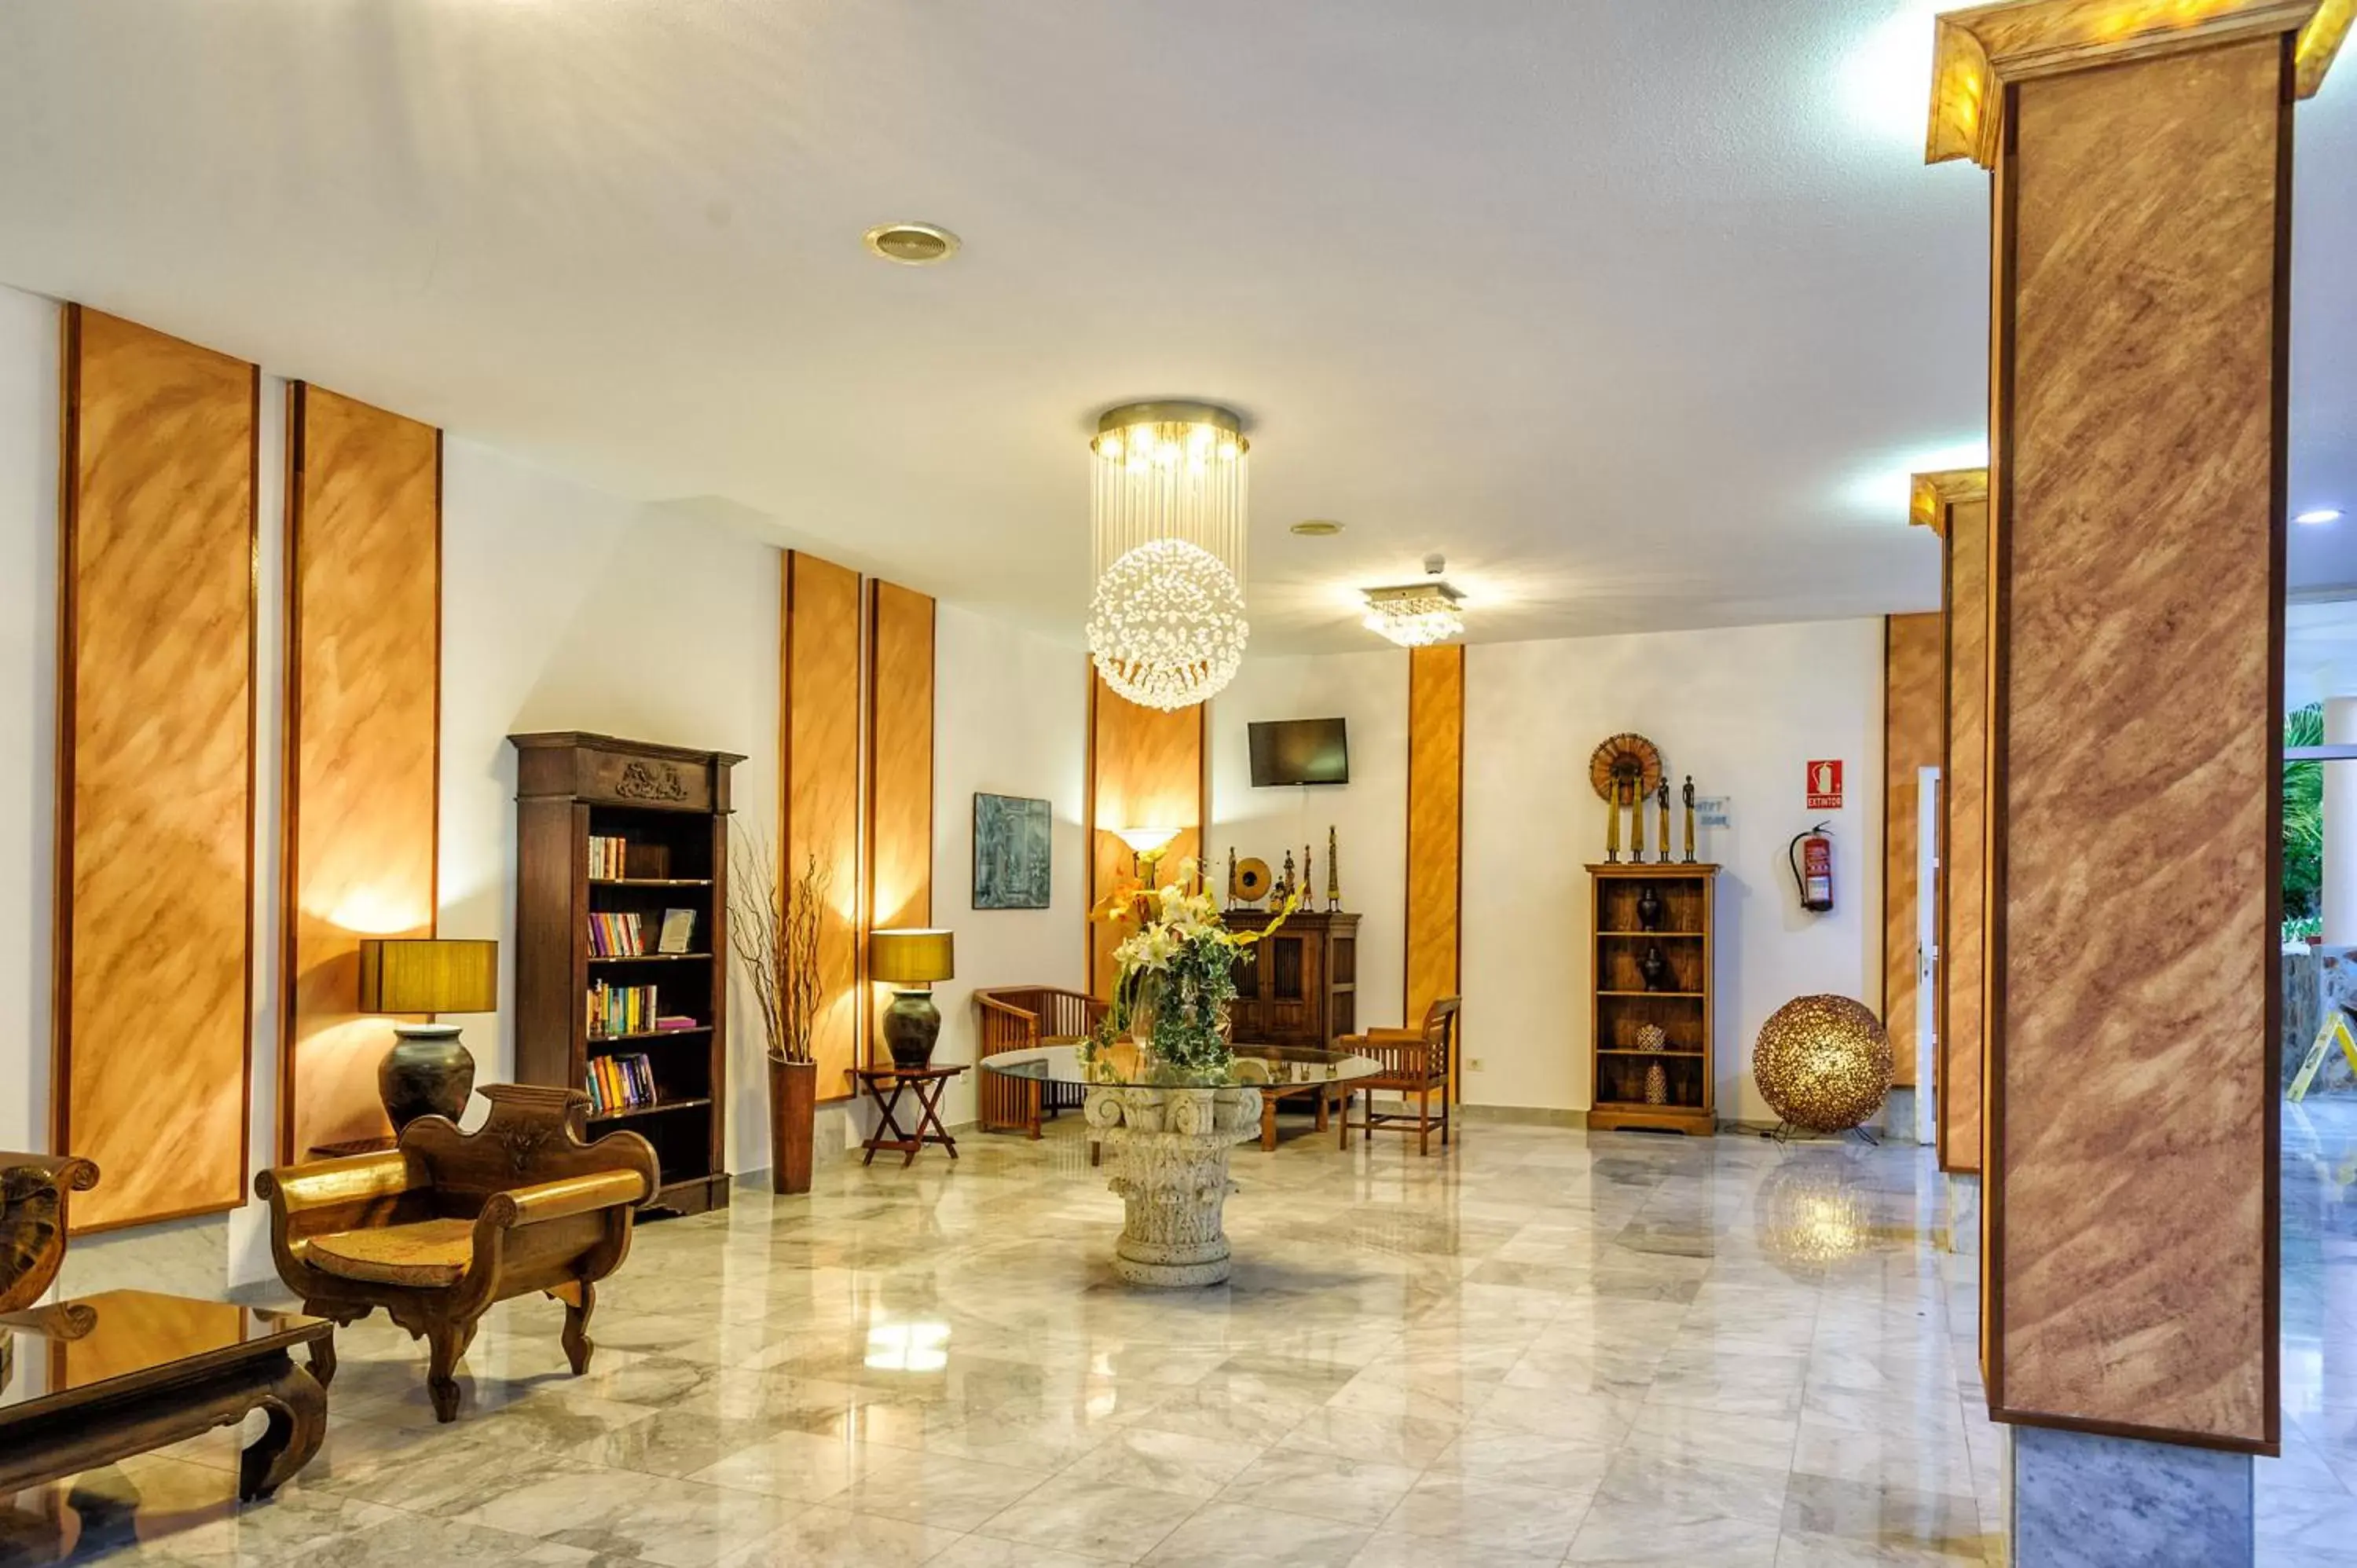 Area and facilities, Lobby/Reception in Apartamentos Marola-Portosin